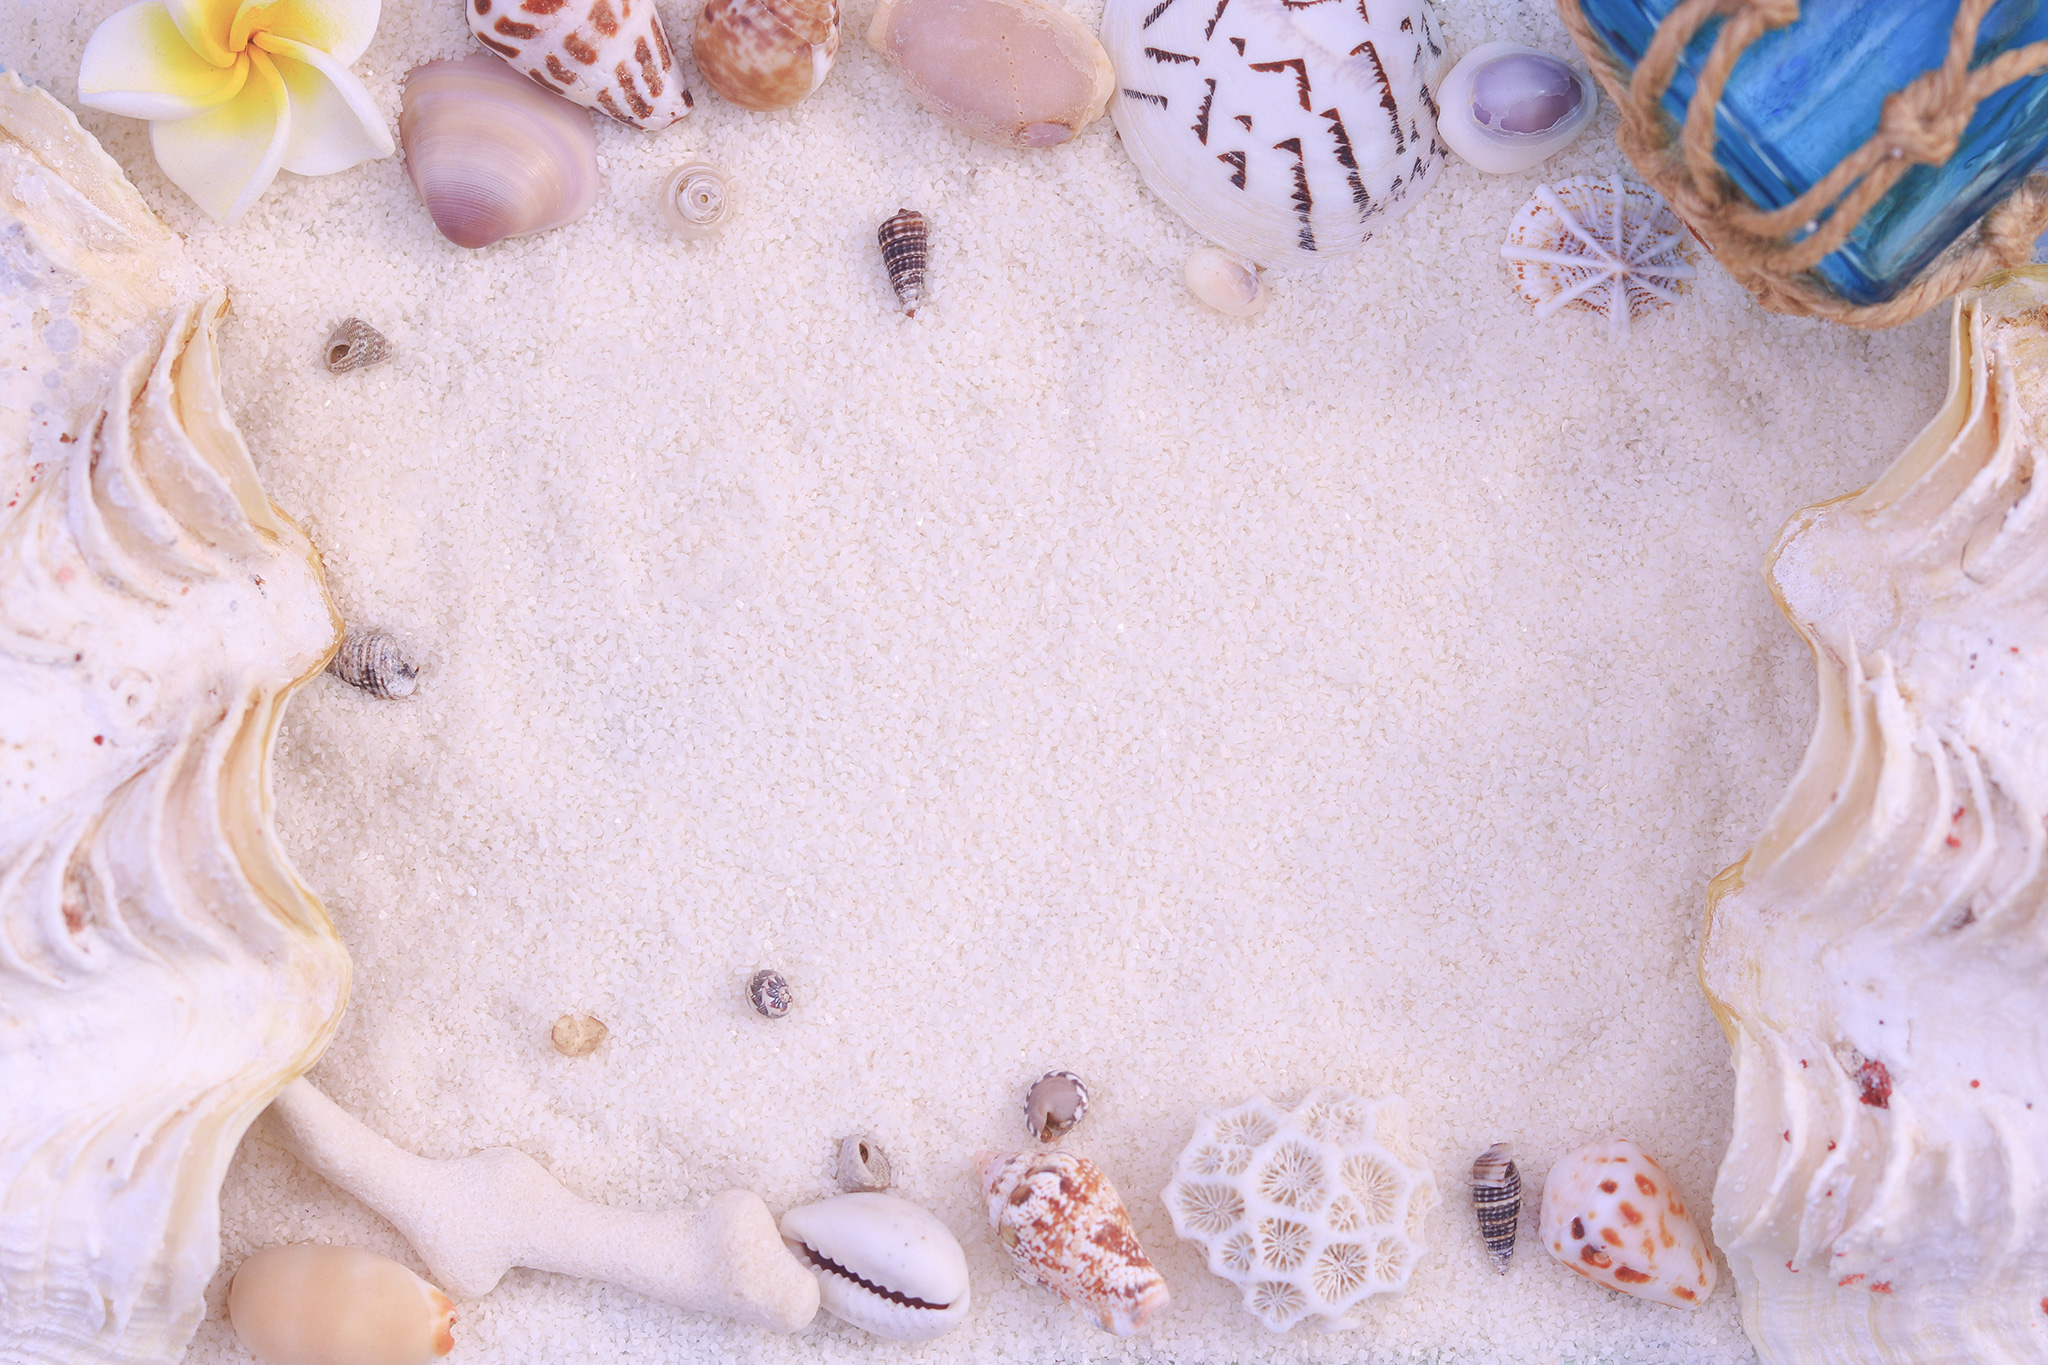 砂浜の上に作った貝殻のフレームのフリー画像 おしゃれなフリー写真素材 Girly Drop